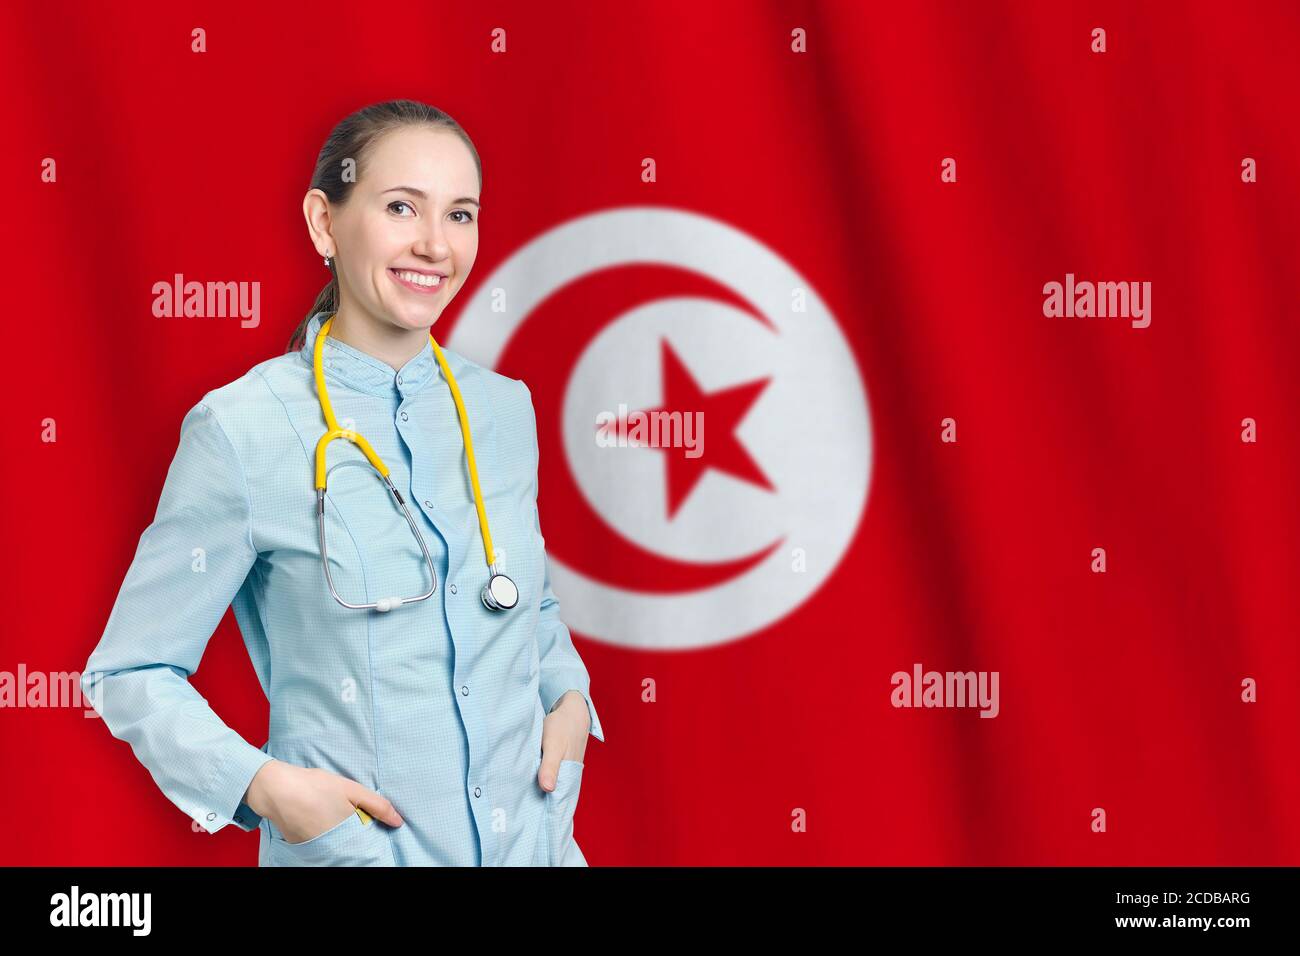 República de Túnez concepto de salud con médico en el fondo. Seguro médico, trabajo o estudio en el país Foto de stock